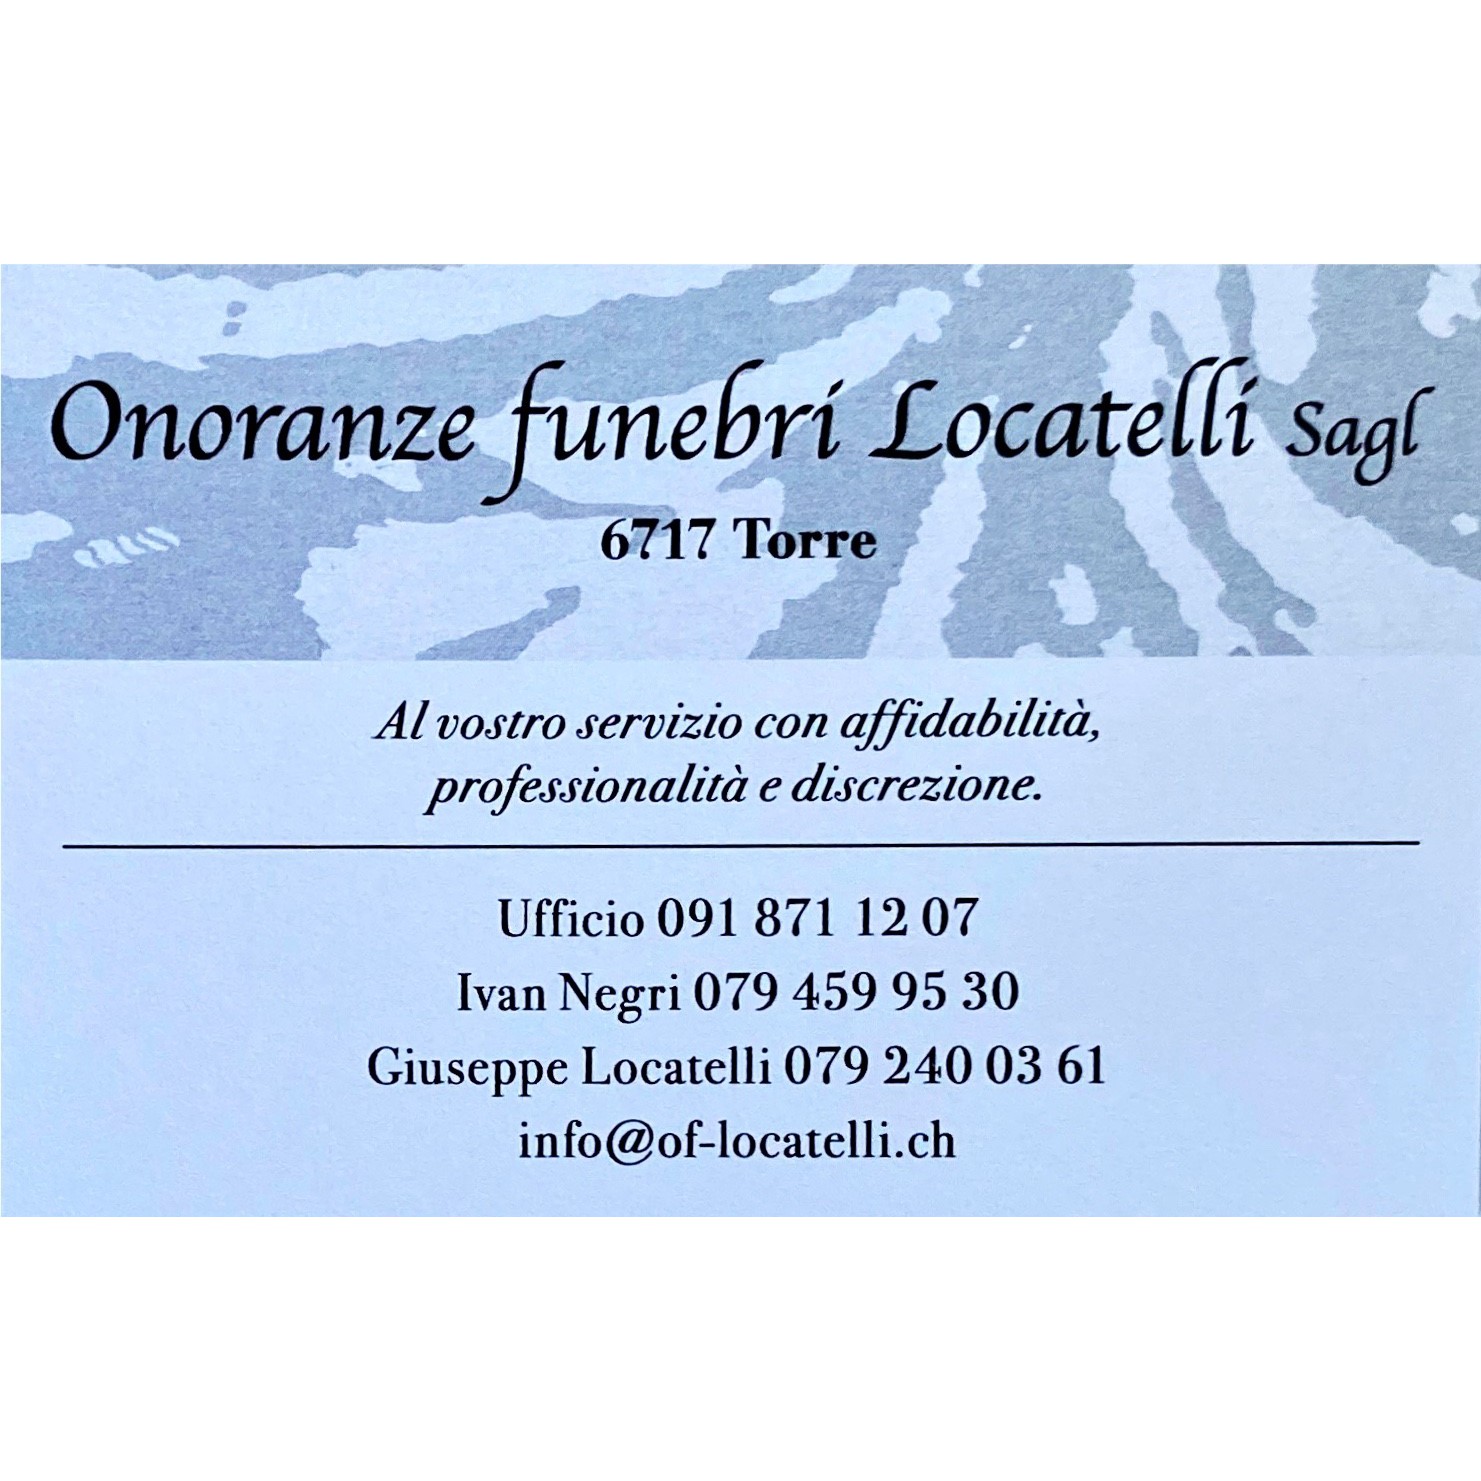 Onoranze Funebri Locatelli Sagl Logo